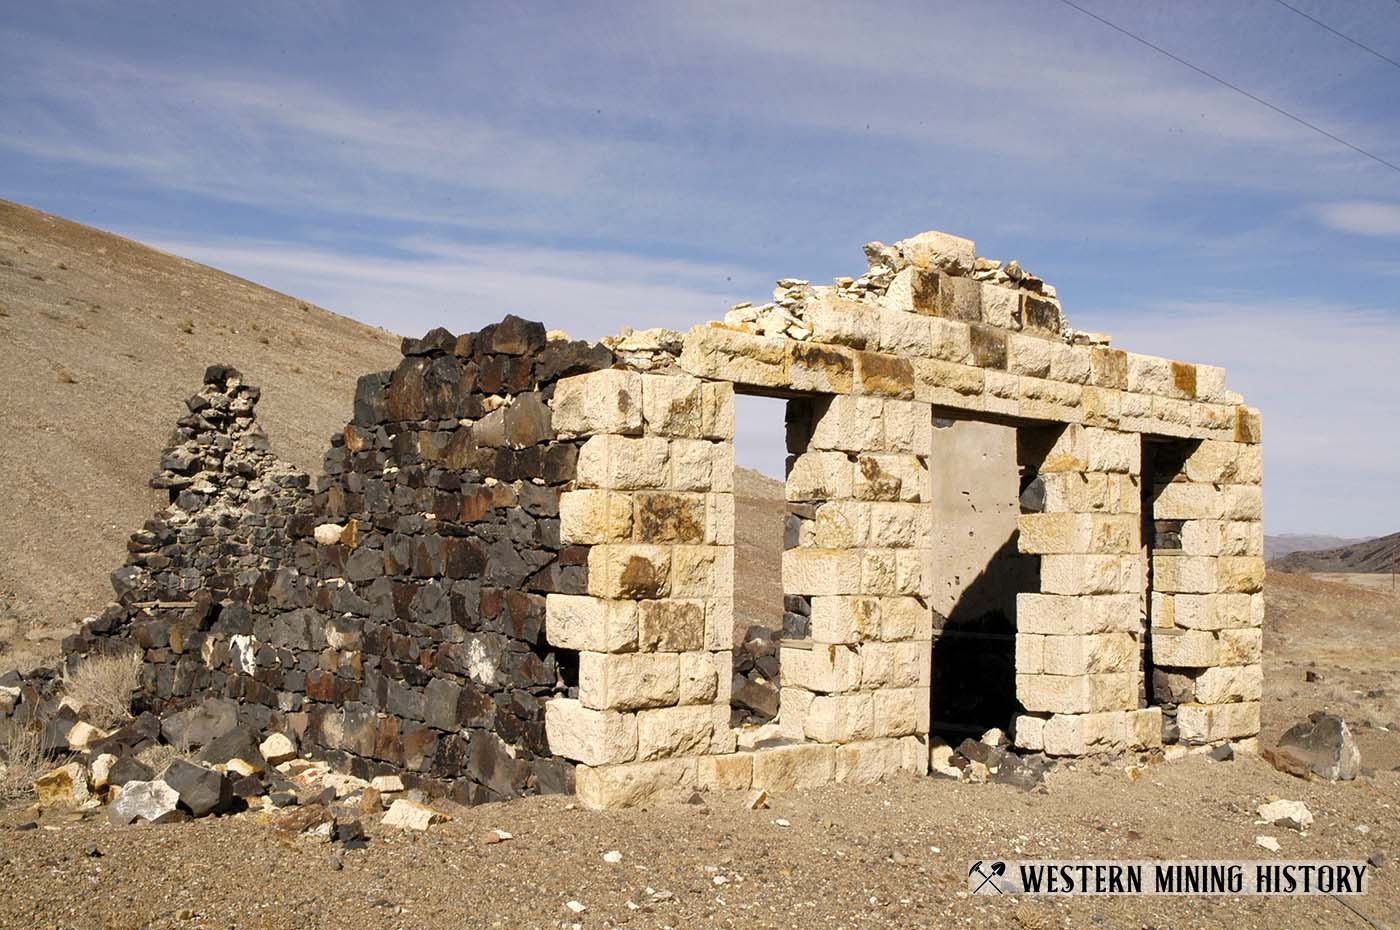 Ruins at Candelaria, Nevada